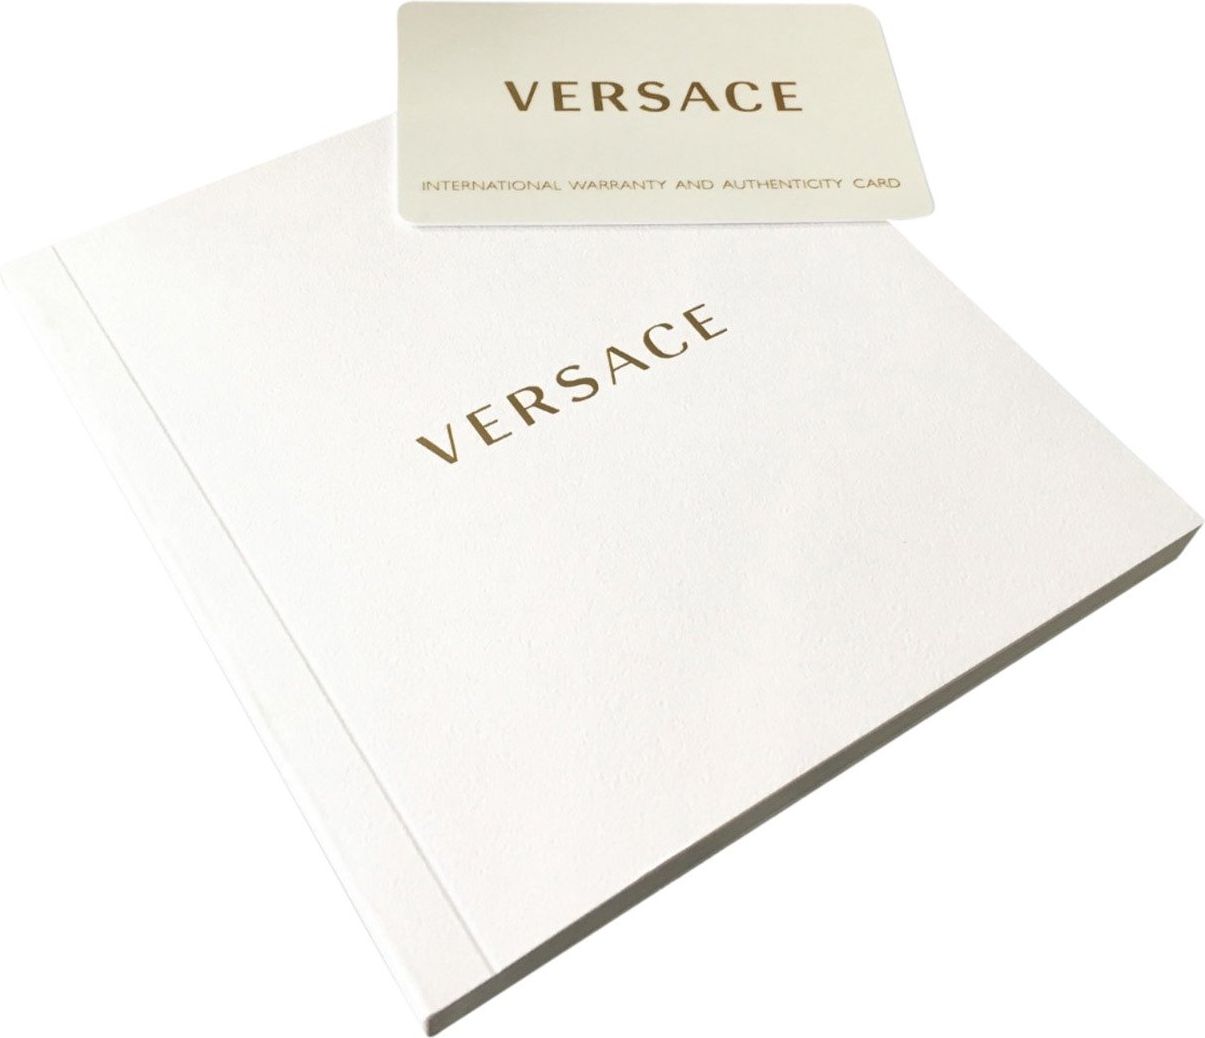 Versace VE2M00621 Revive heren horloge 41 mm Zwart